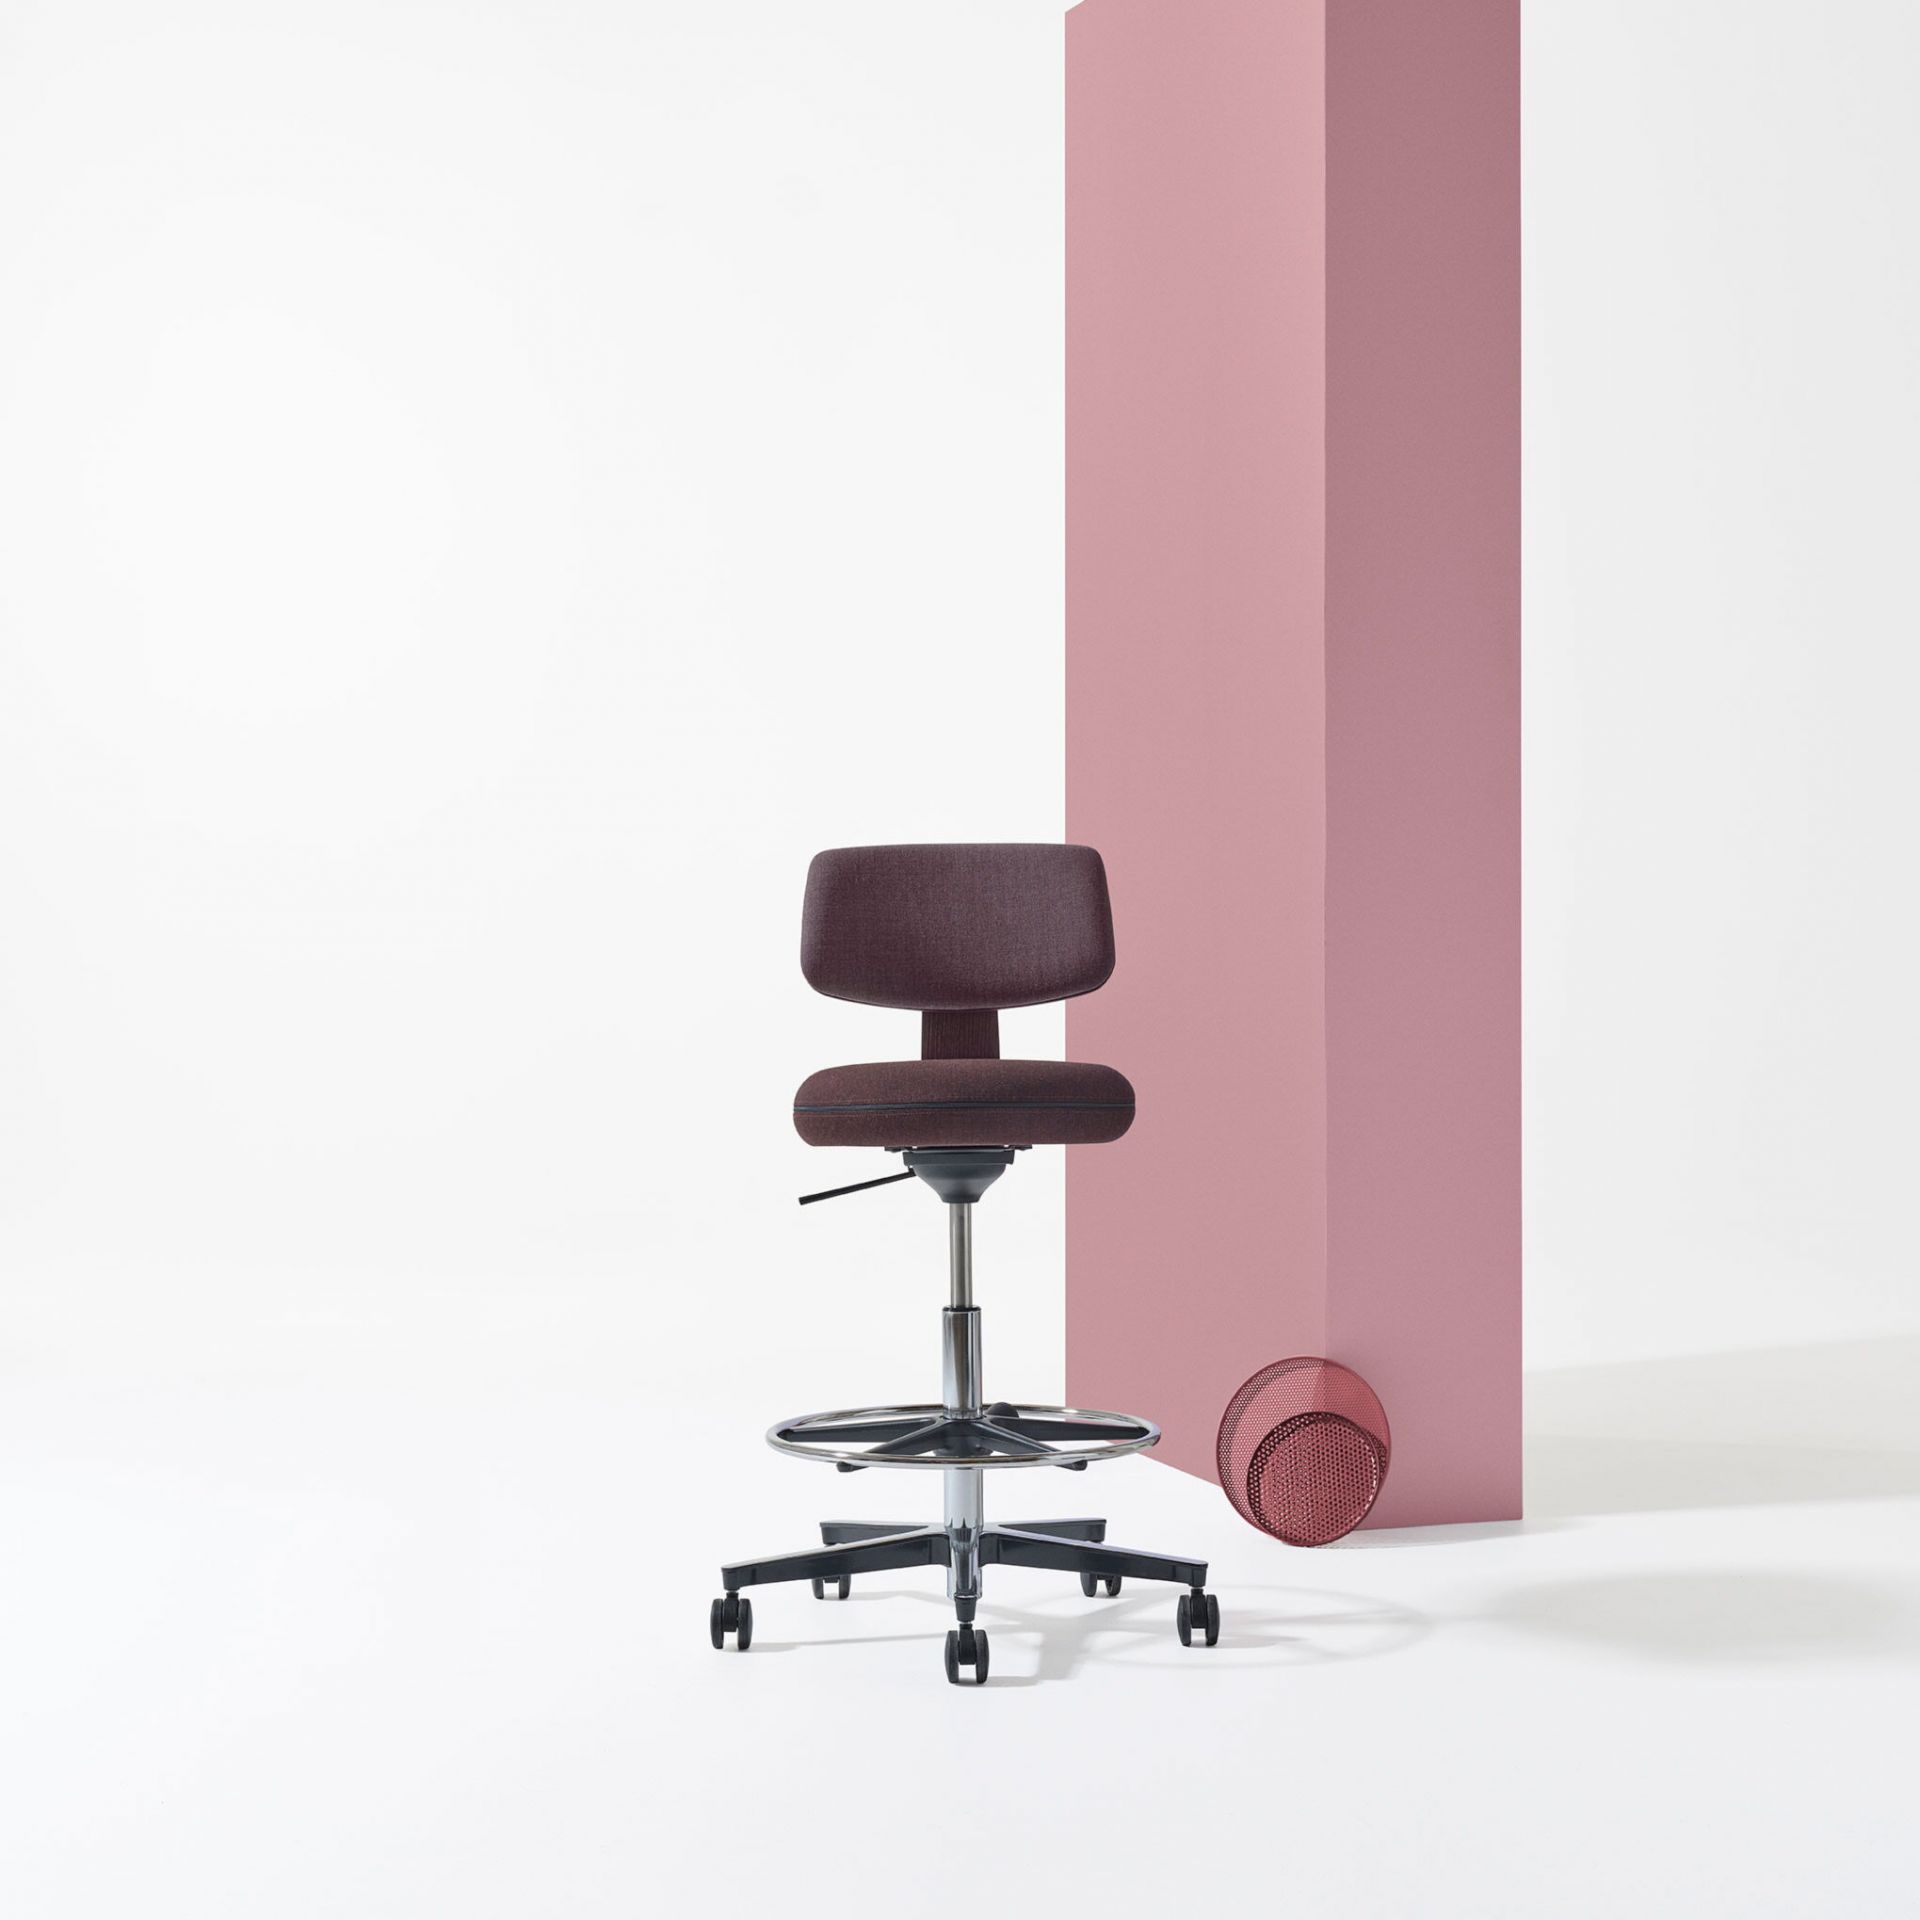 Savo 360 360 høy stol product image 3